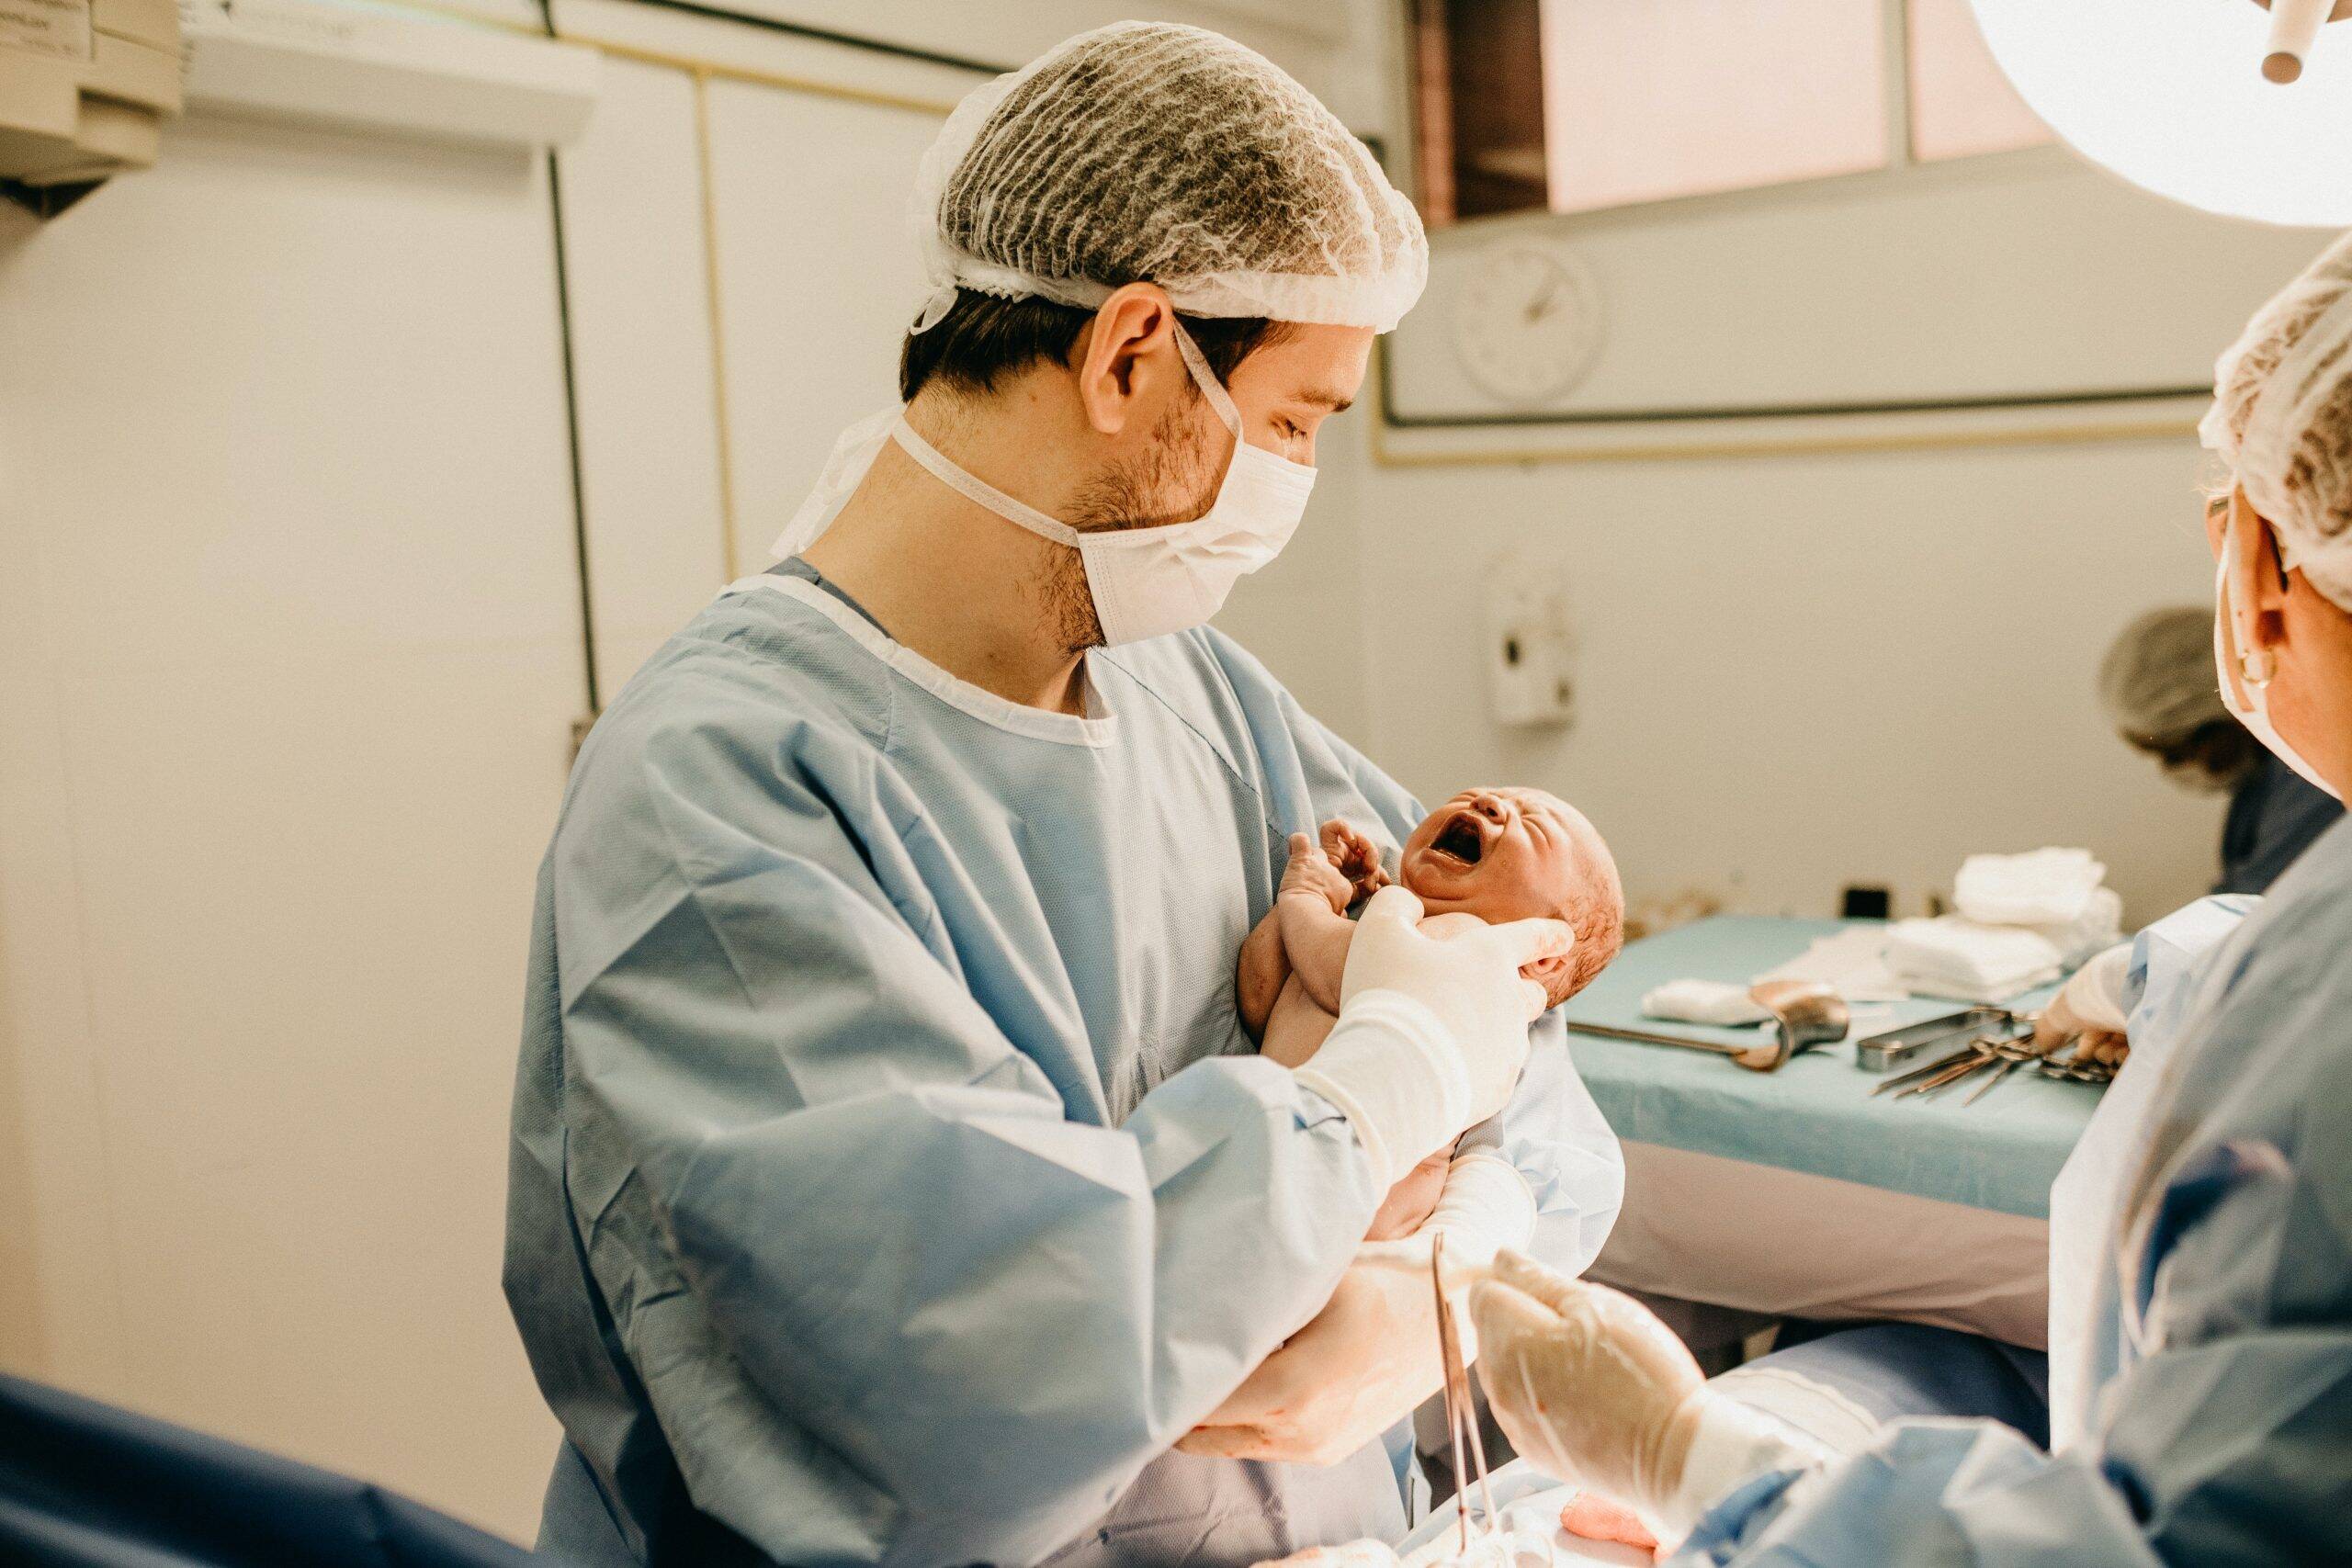 Maternidade cobra taxa pré-parto de R$ 1800 de mães que “demoram” no centro obstétrico 